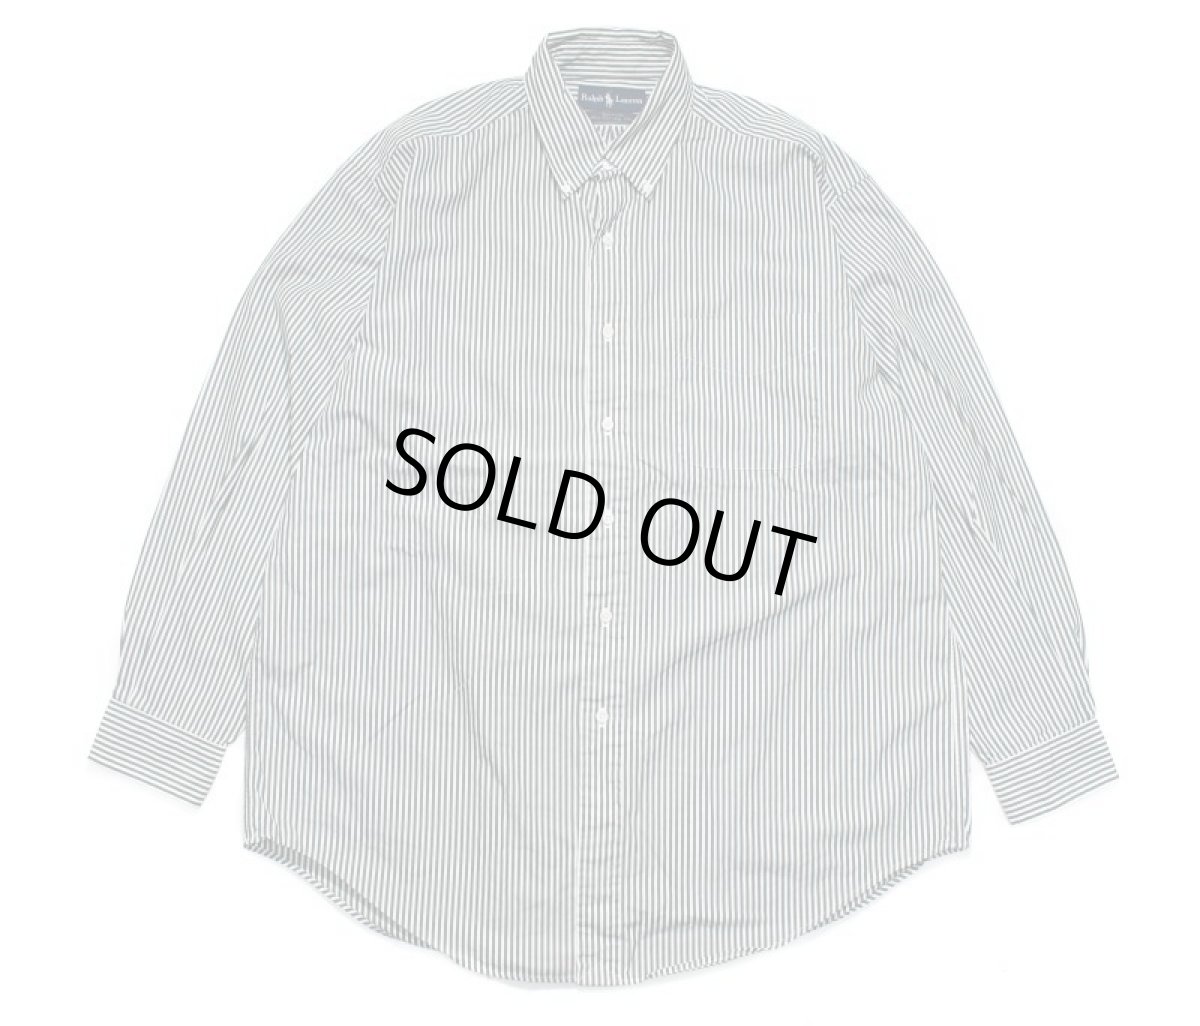 画像1: Used Ralph Lauren Stripe Shirt "Yarmouth" ラルフローレン (1)